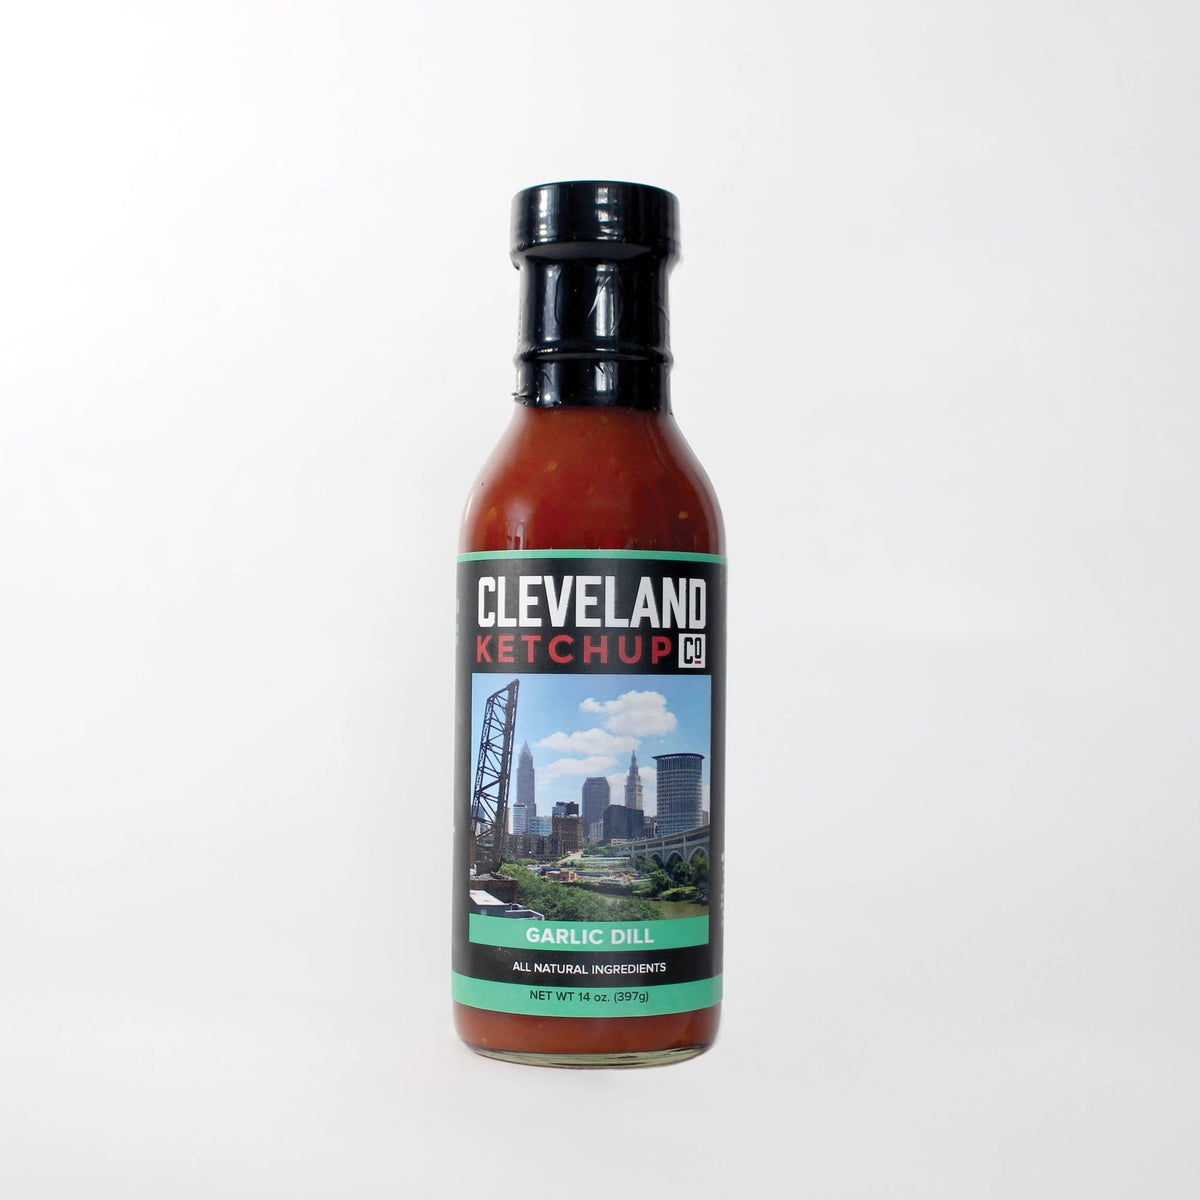 Cleveland Ketchup Co. - Garlic Dill Ketchup - Pacific Flyway Supplies